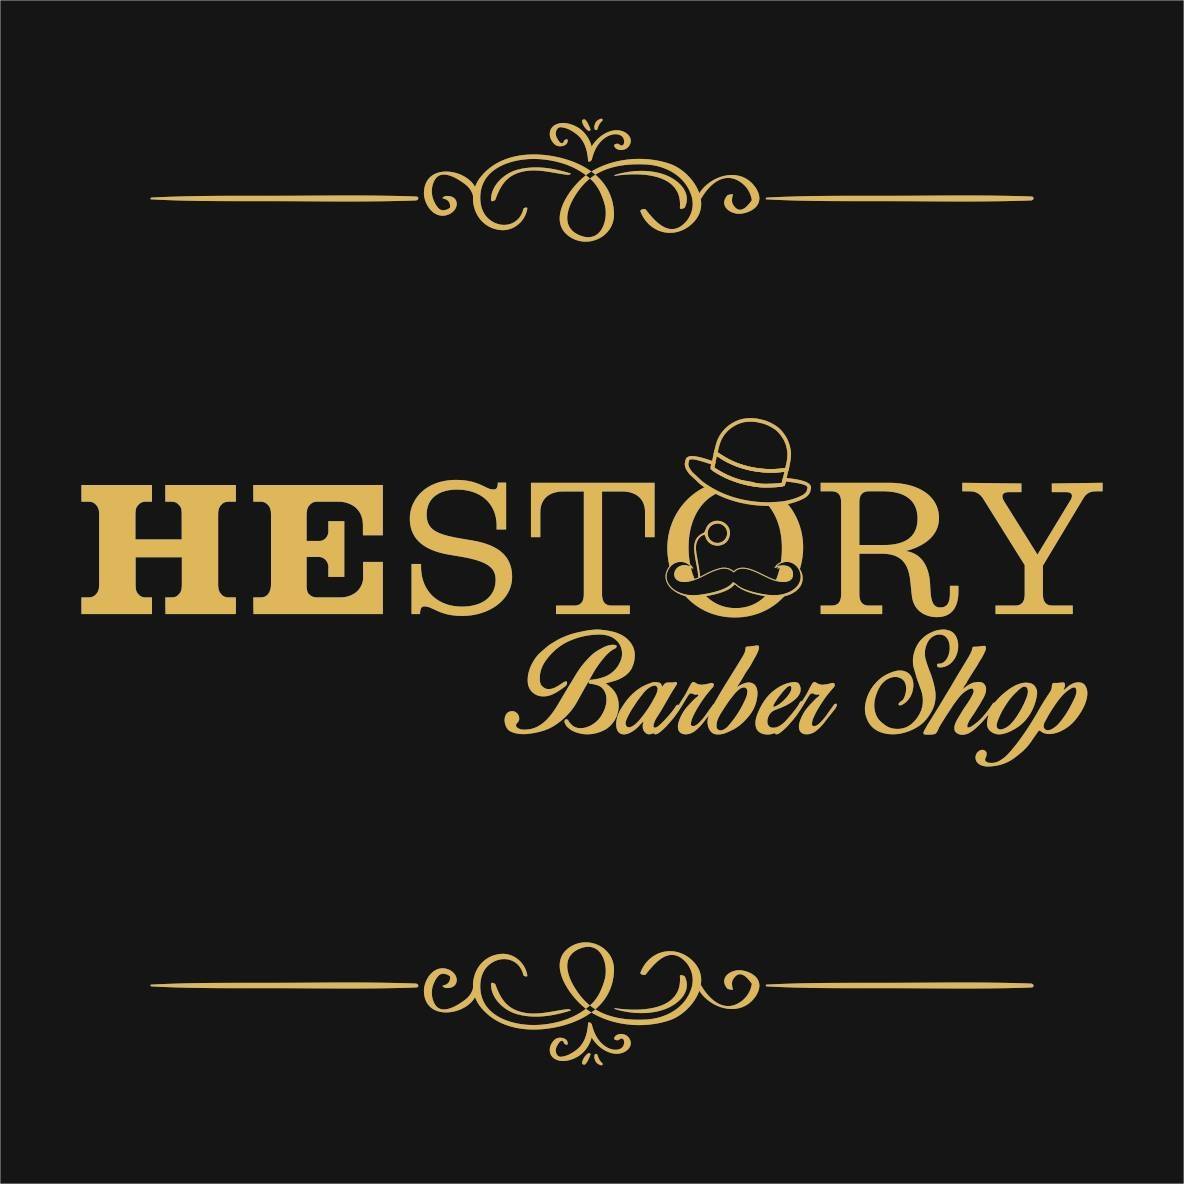 HEstory Barbershop